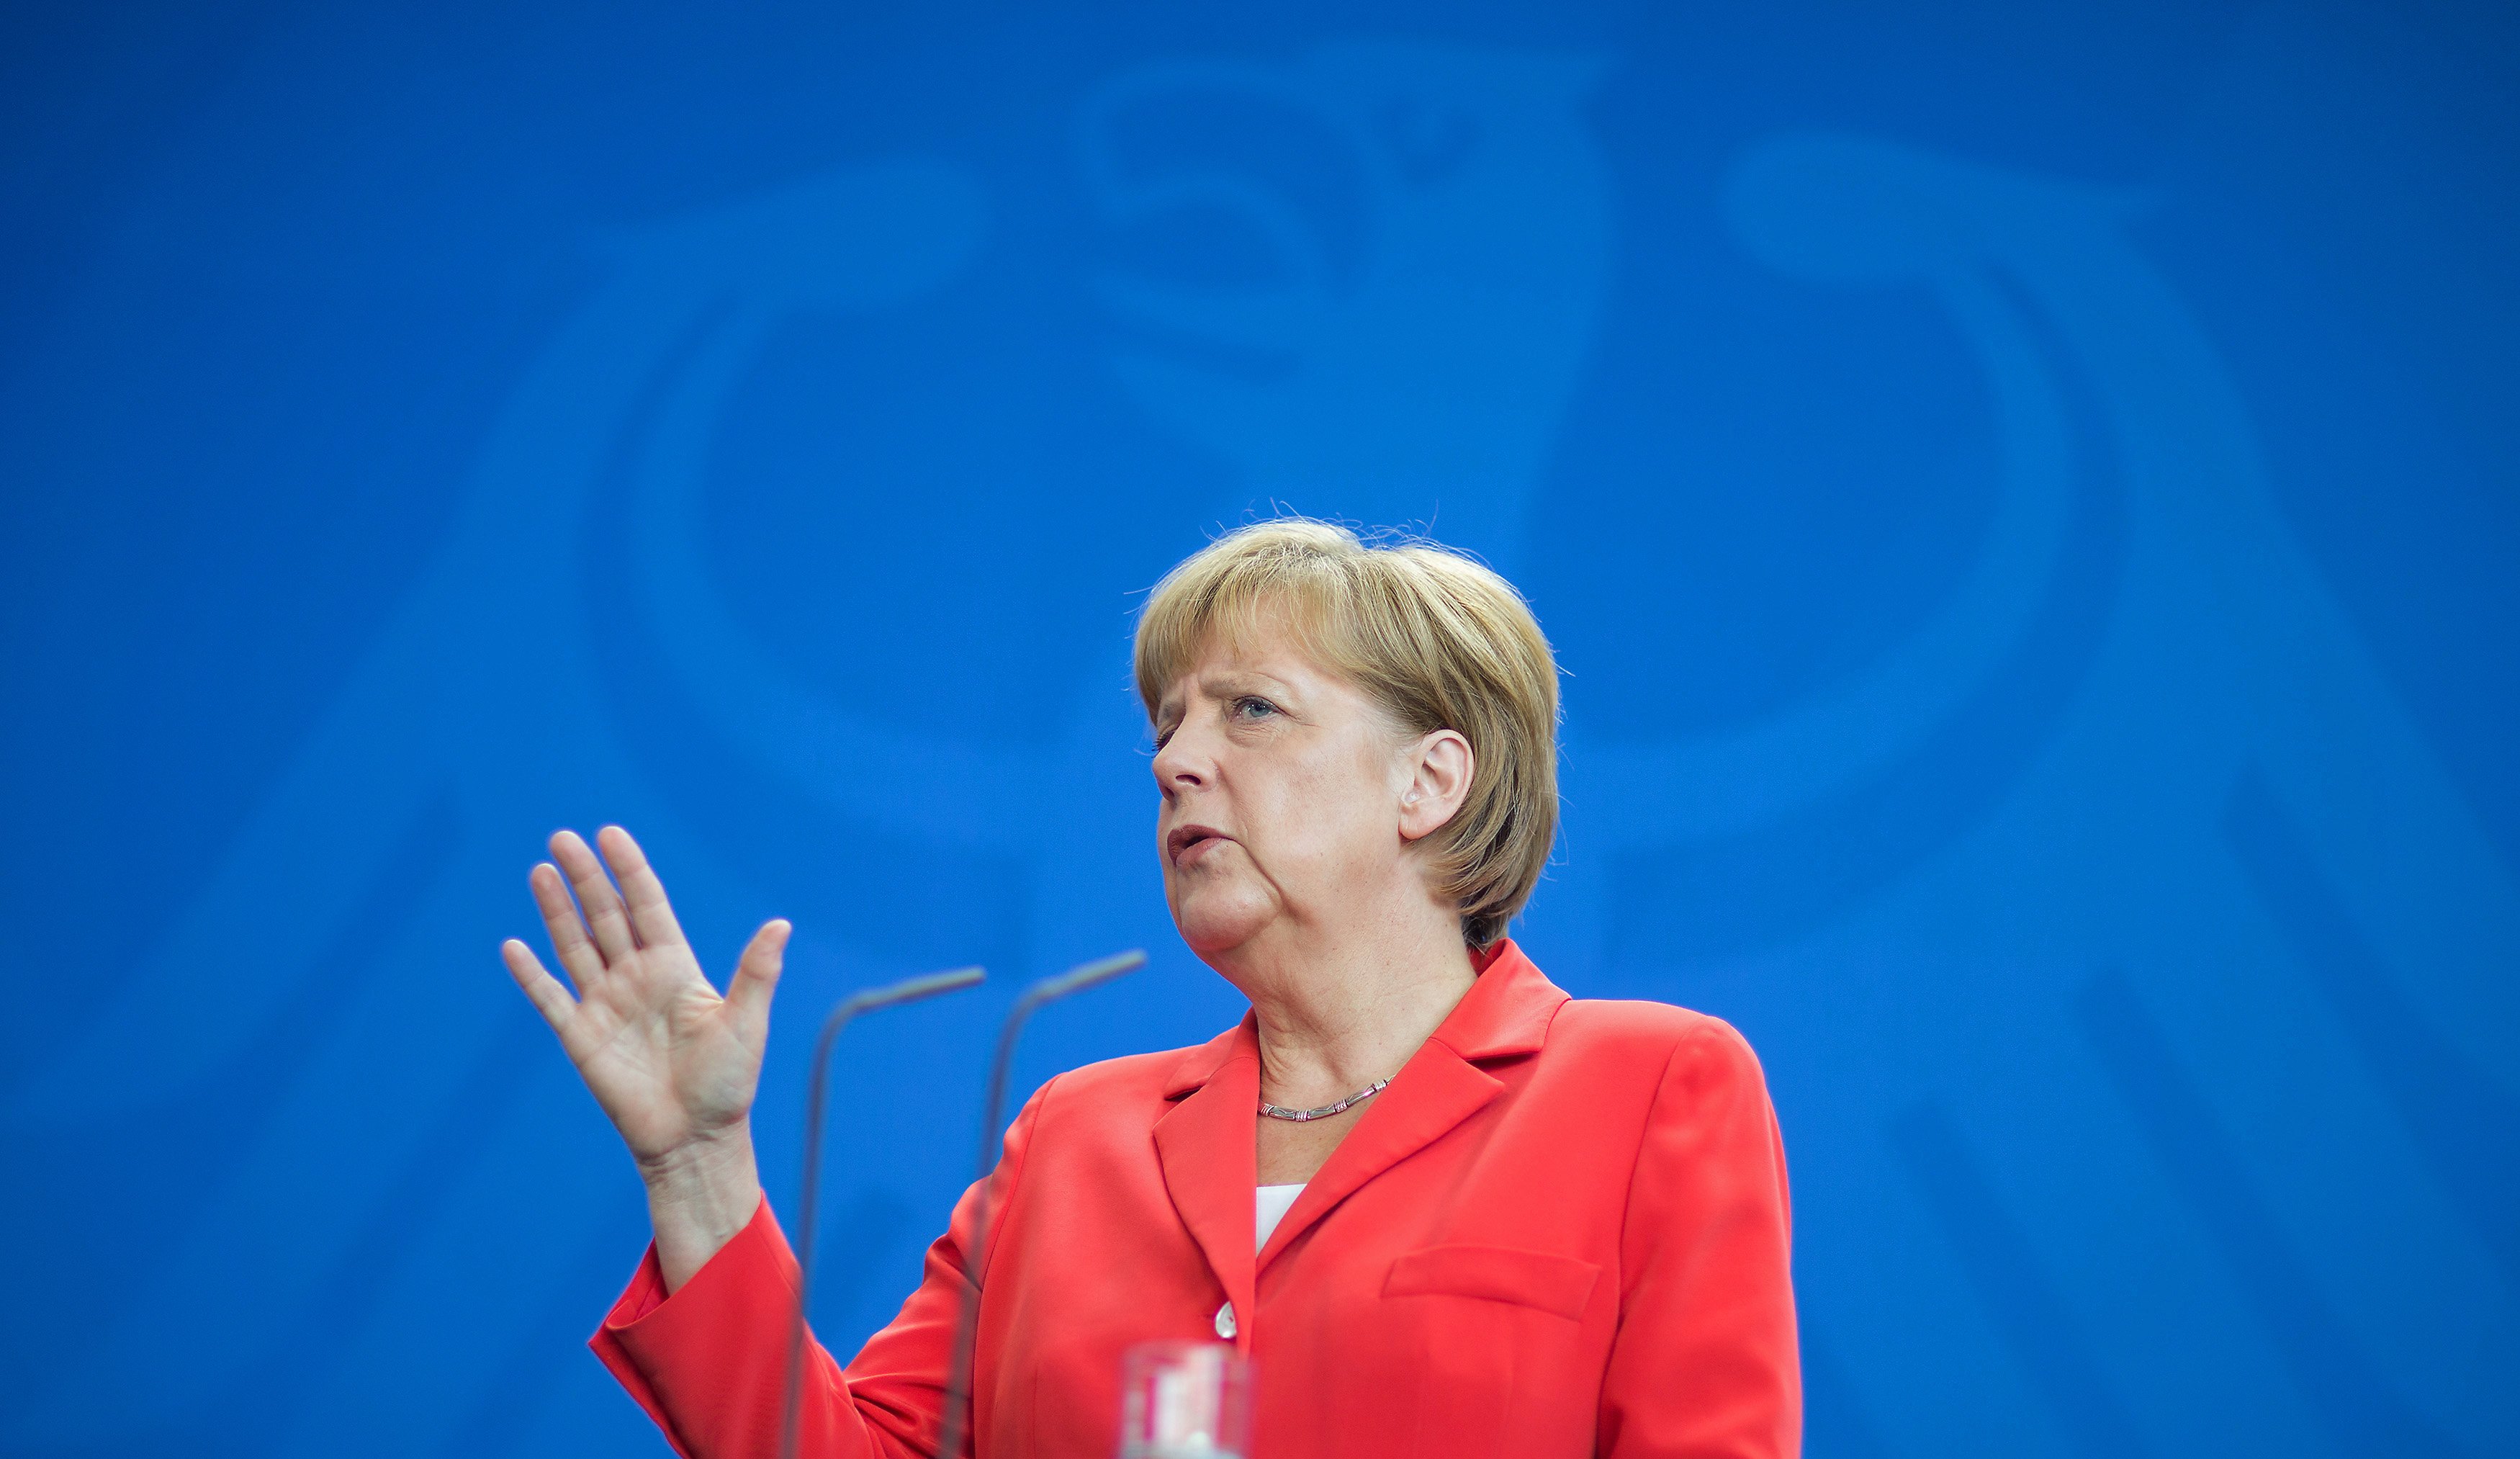 Фальшь, Ложь, Меркель: Меркель занесла себя в «Белую книгу»